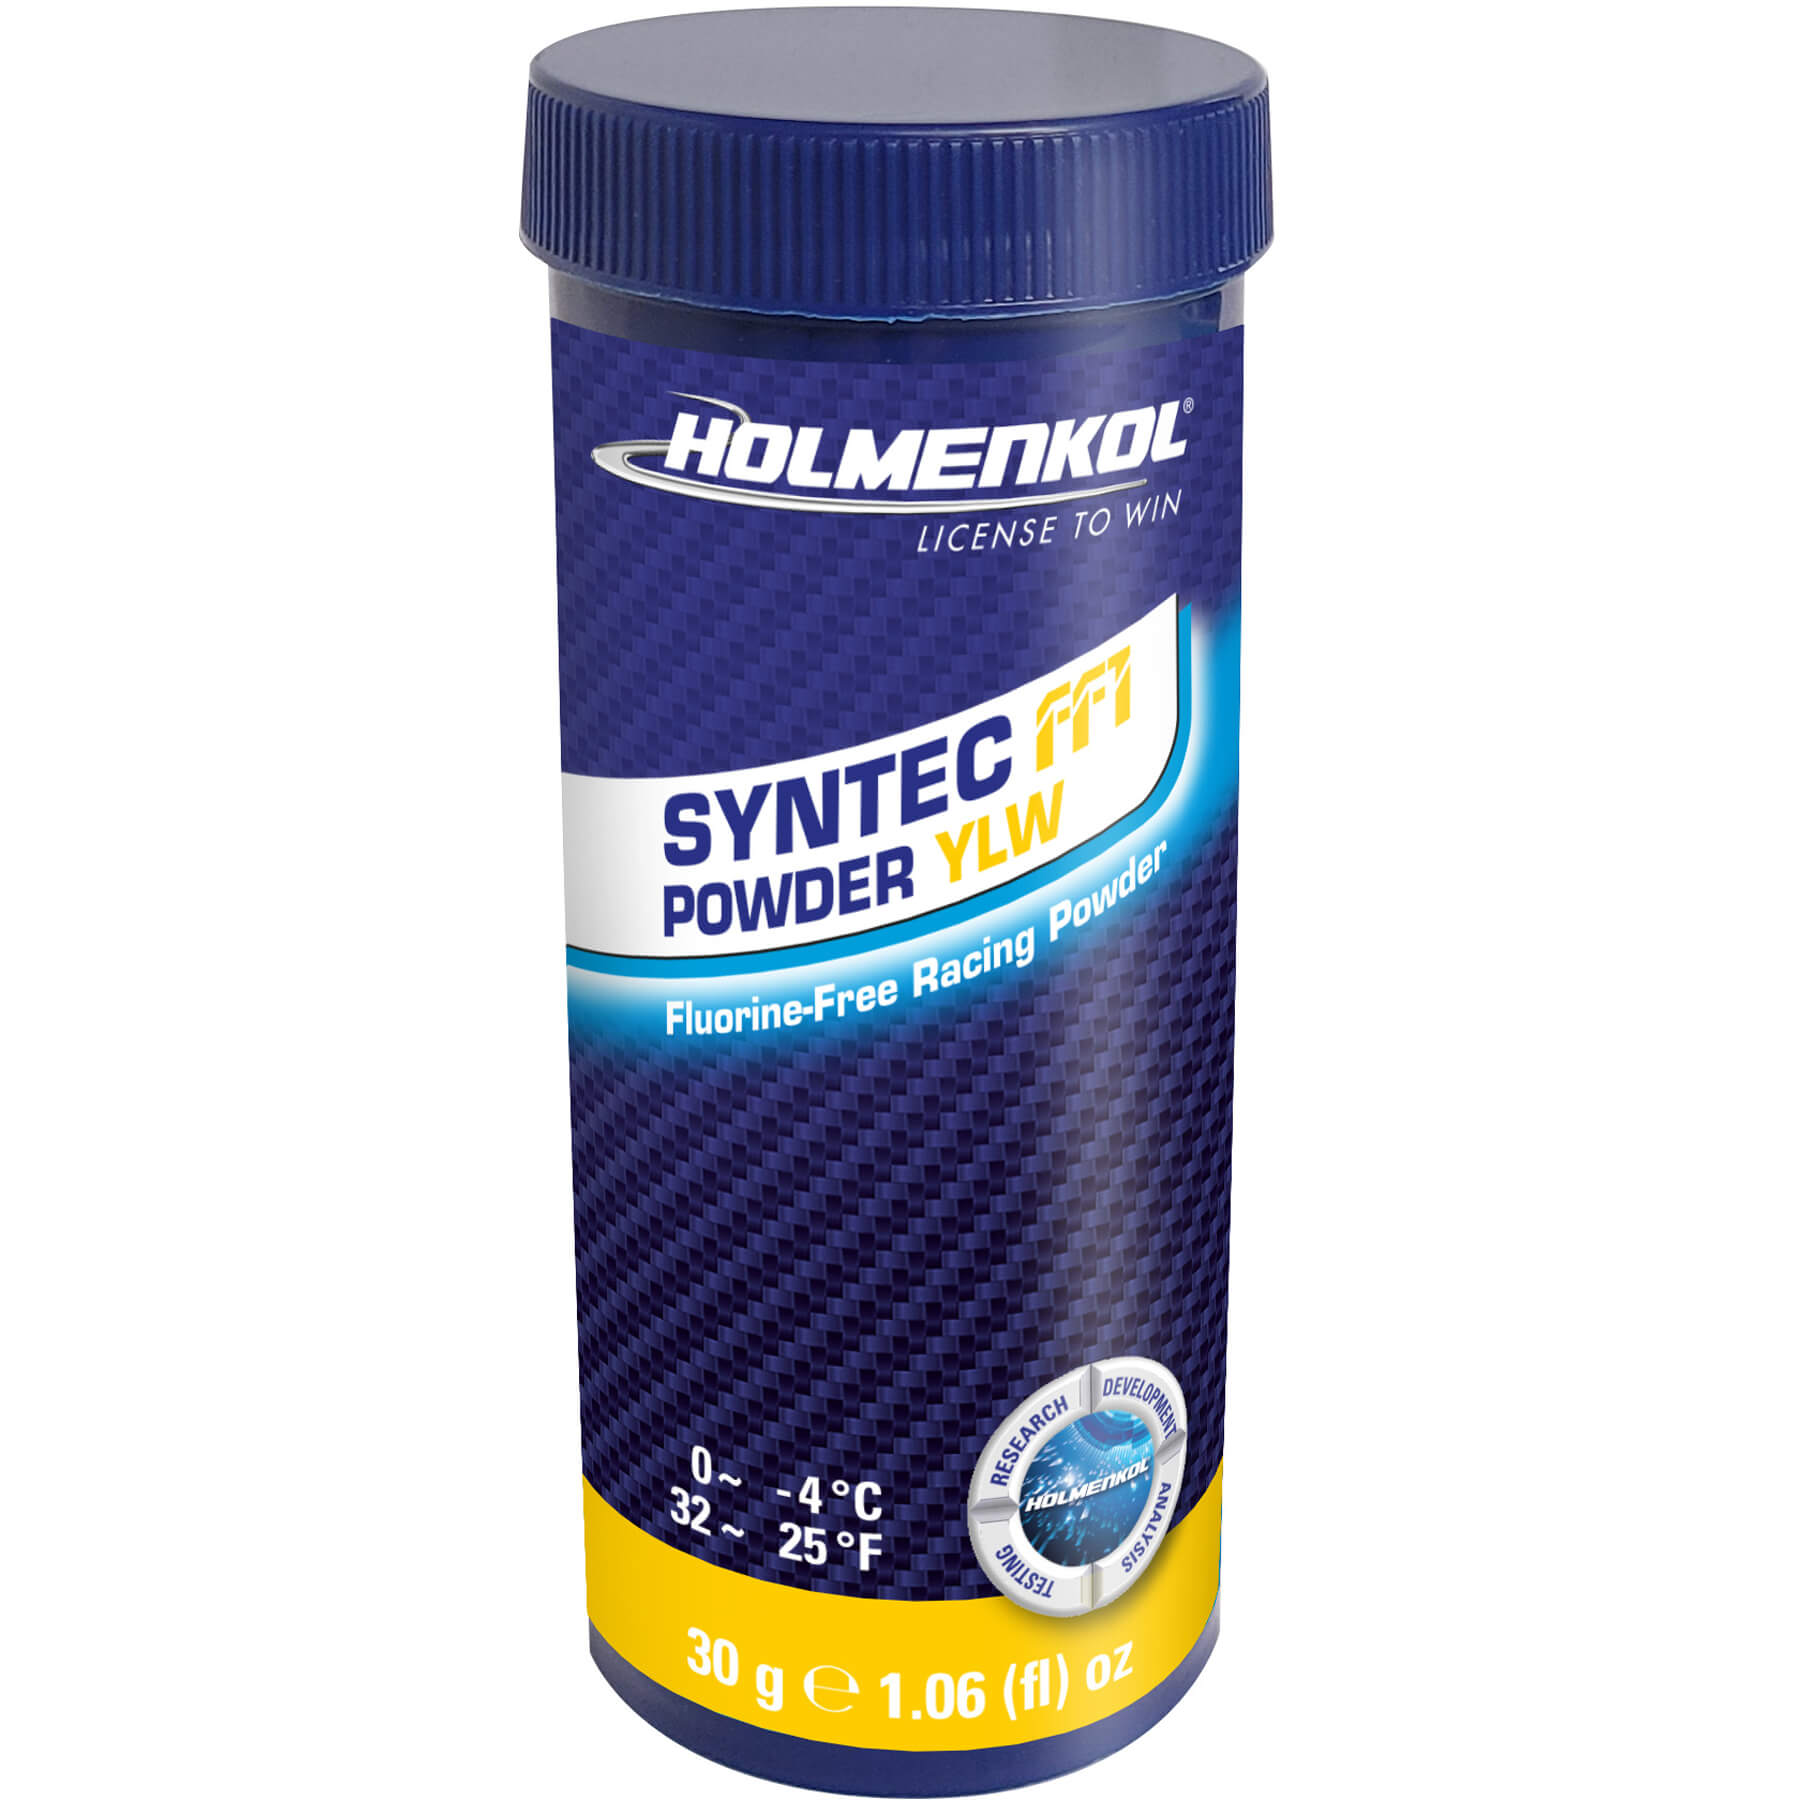 Buy yellow Holmenkol Syntec FF1 Powder 30g